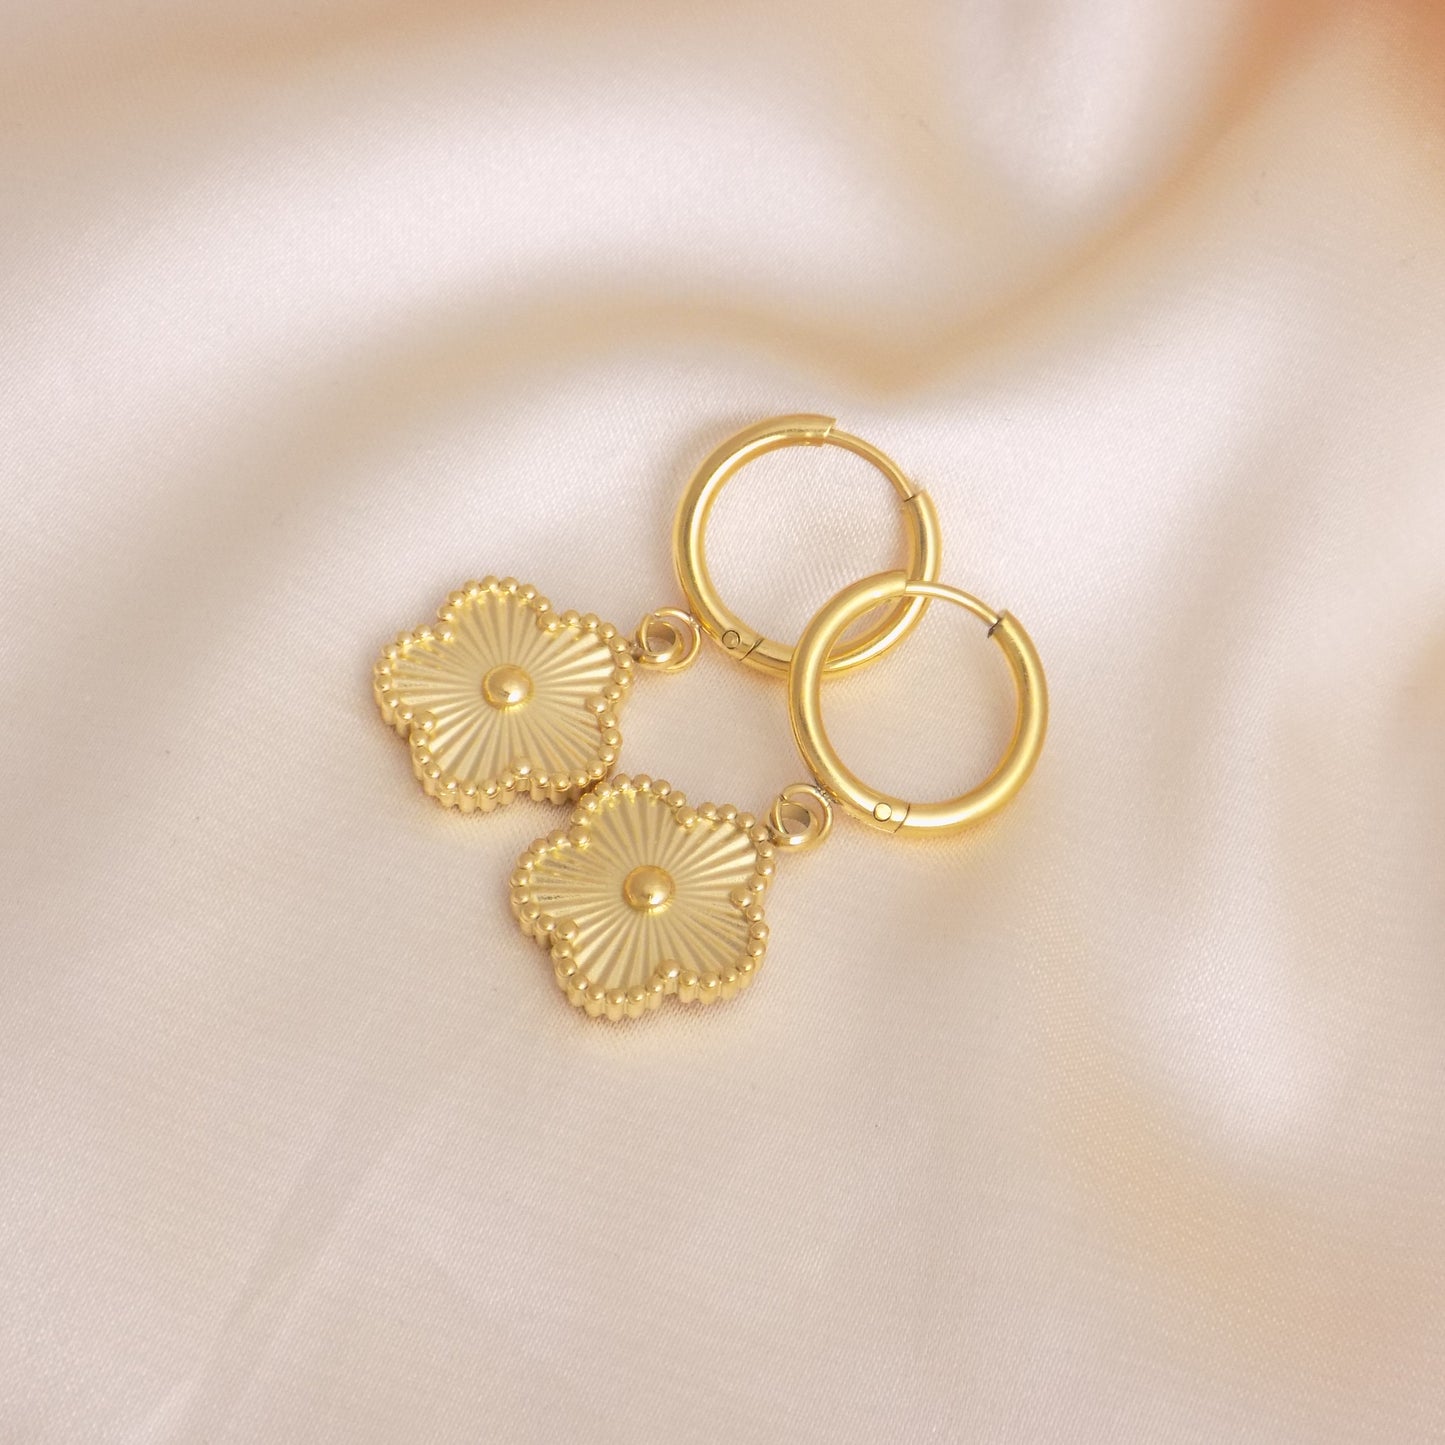 18K Gold Clover Hoop Earrings Gold Plated Stainless Steel Flower